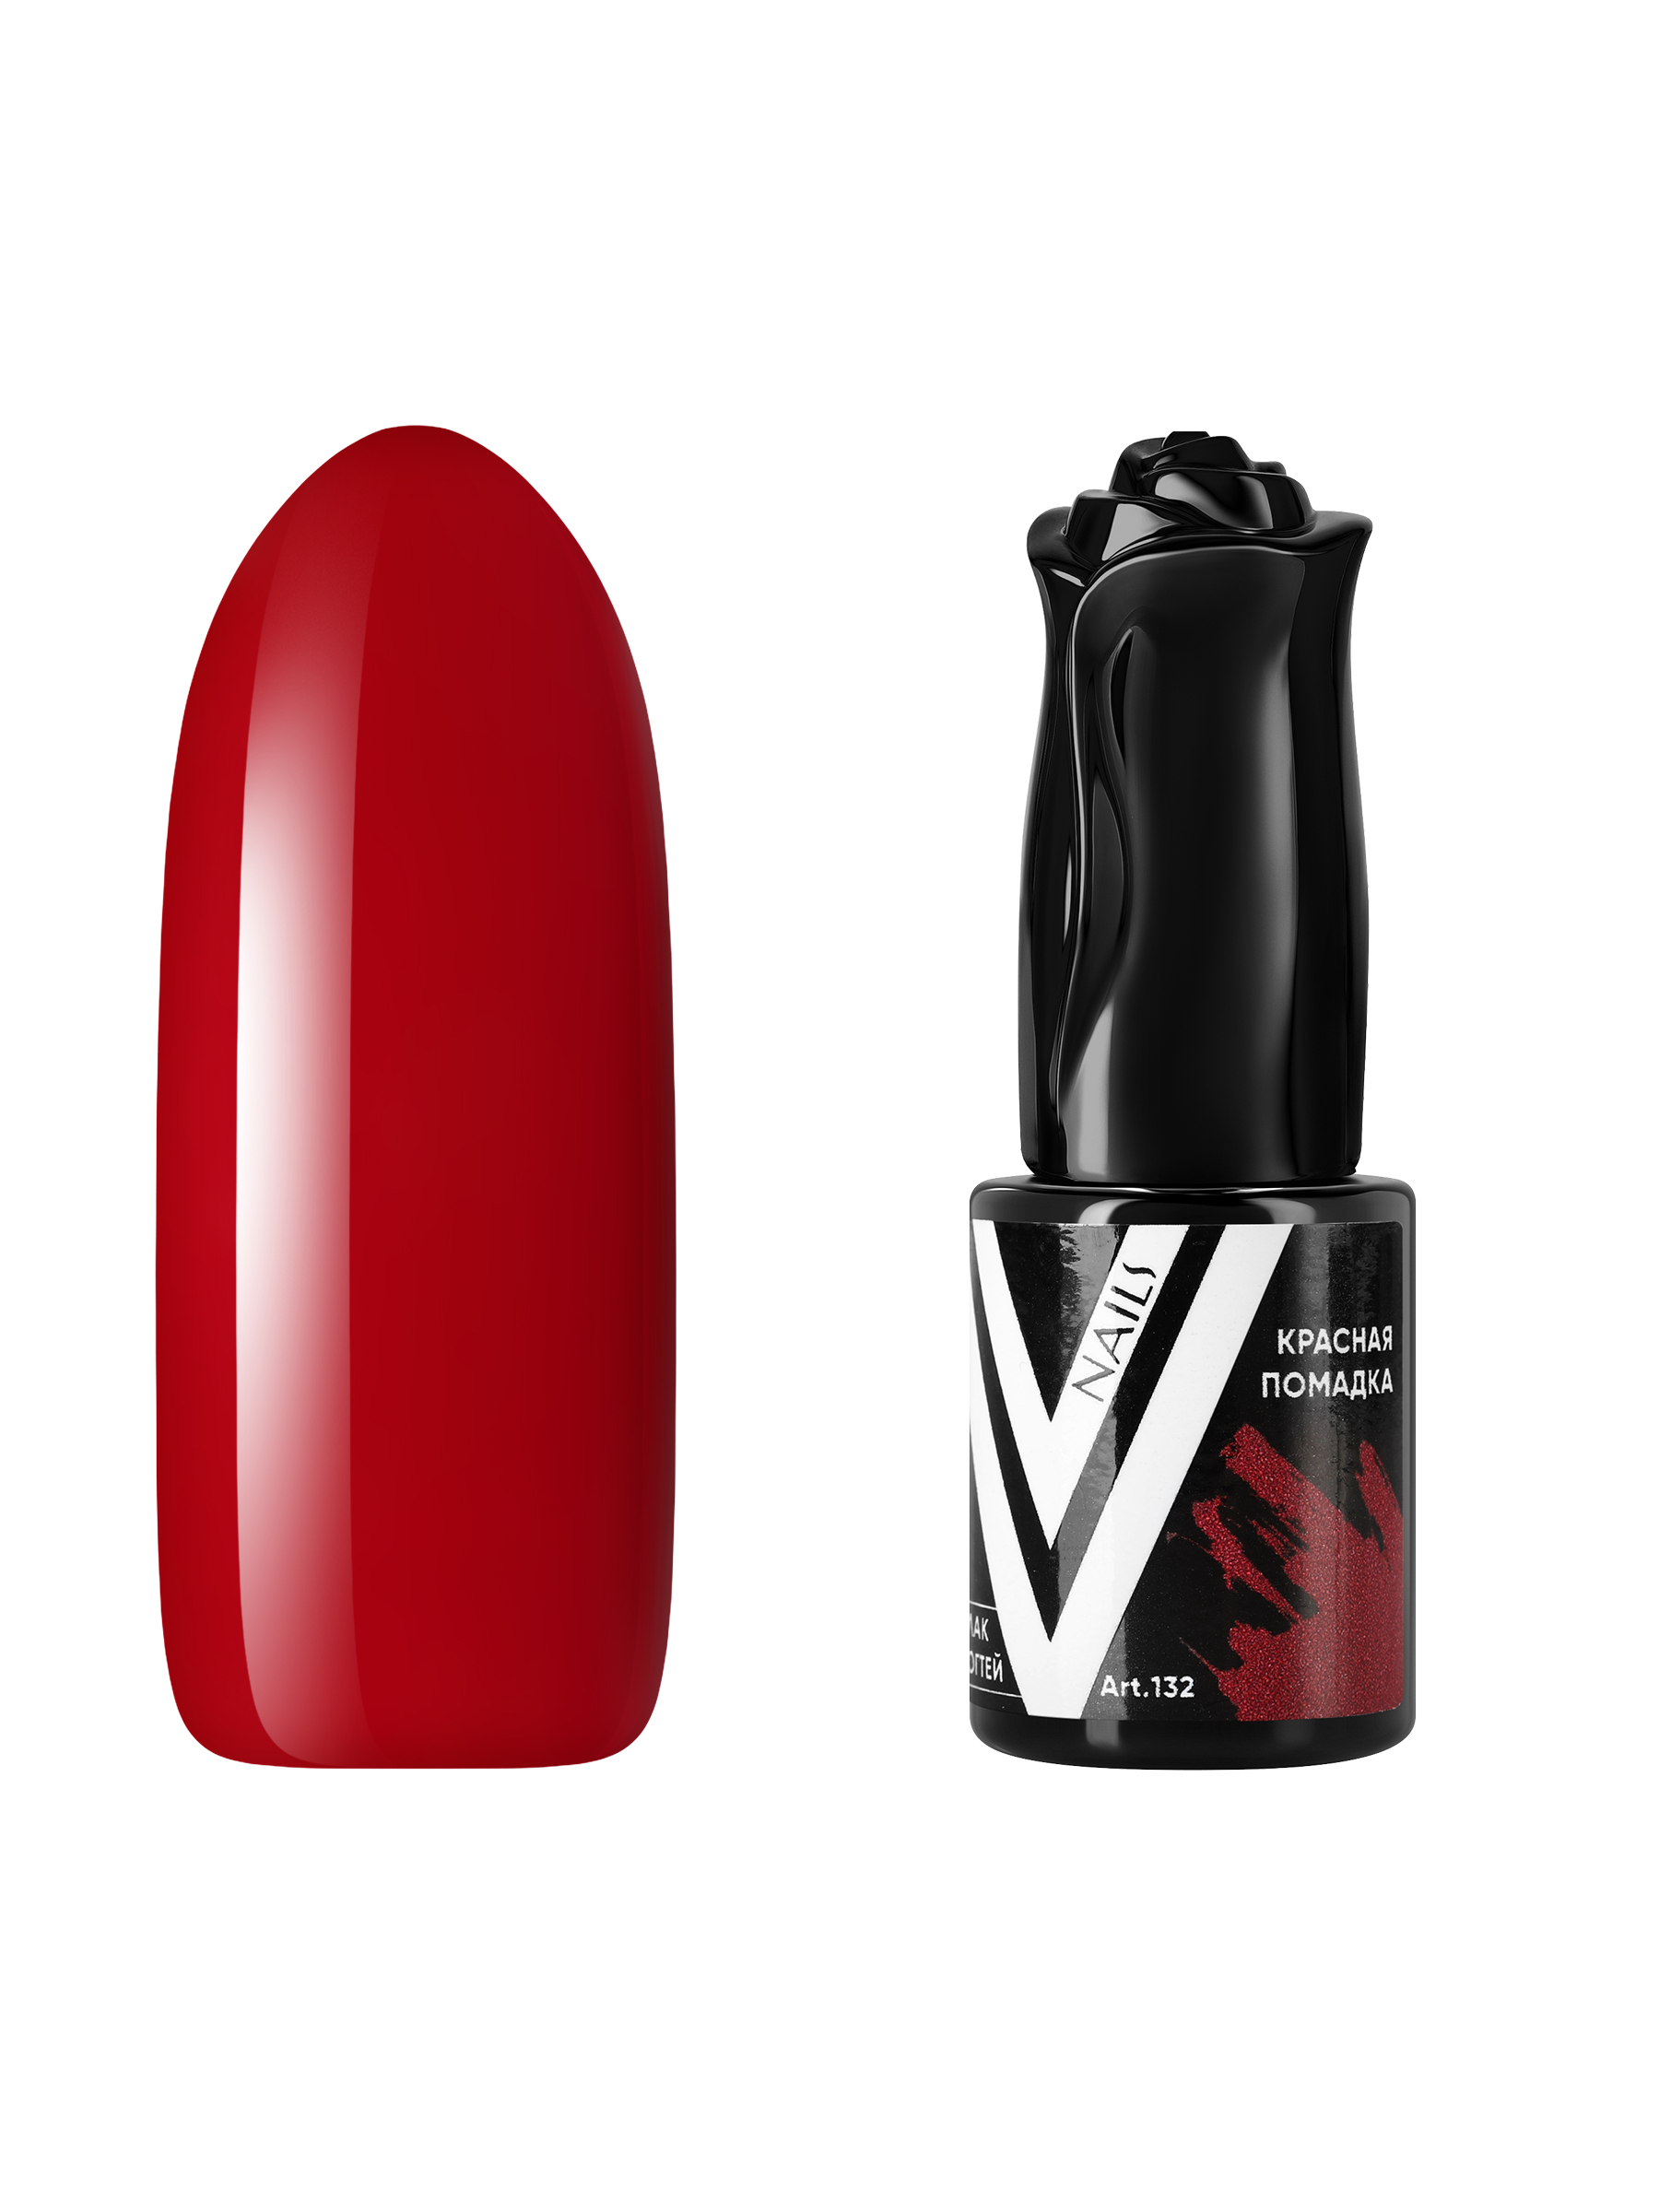 Гель-лак для ногтей Vogue Nails полупрозрачный самовыравнивающийся темный, красный, 10 мл темный пористый шоколад красный октябрь с хрустящими криспами лайма 75 гр